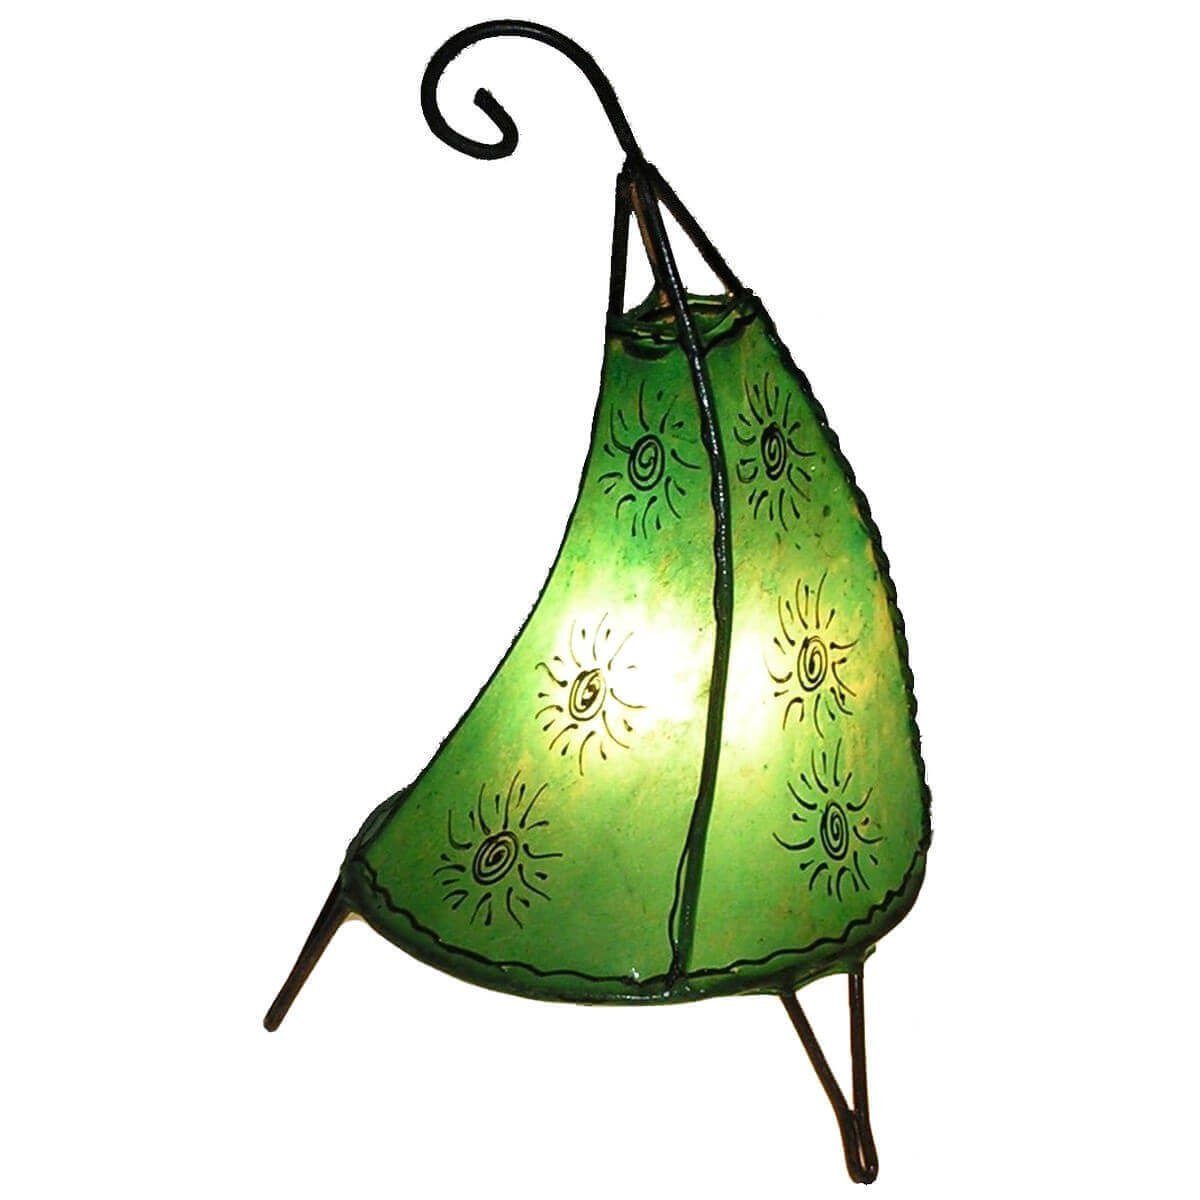 Lederlampe marokkanische Warmweiß, Stehlampe Tissir Grün Leuchtmittel, Ambilight, Sonne 36 cm, SIMANDRA ohne